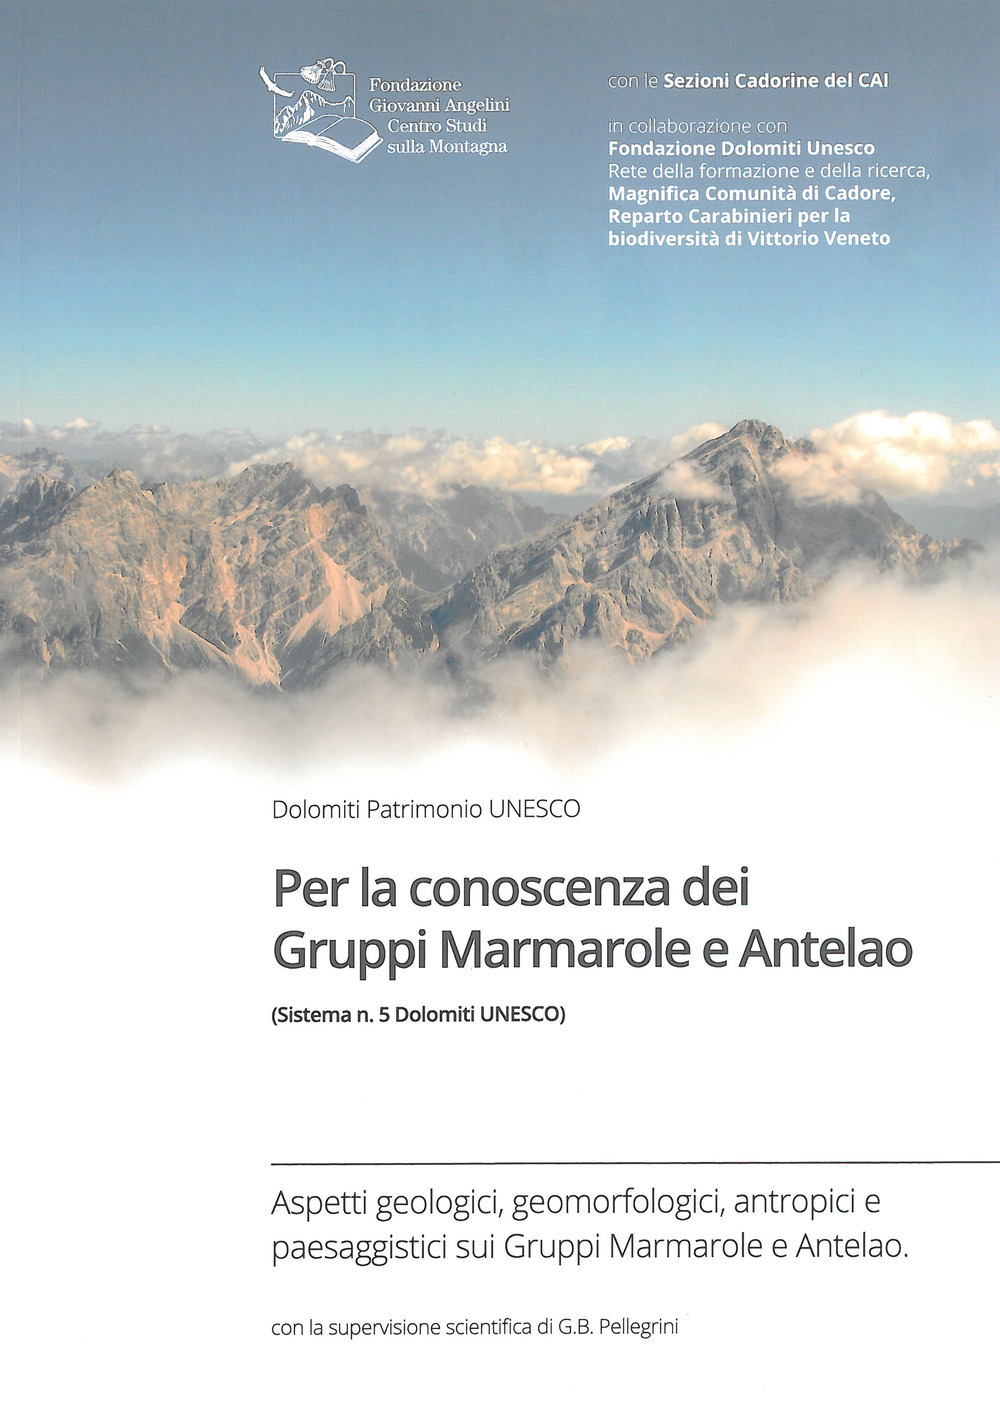 Image of Per la conoscenza dei Gruppi Marmarole e Antelao (Sistema n. 5 di Dolomiti UNESCO)